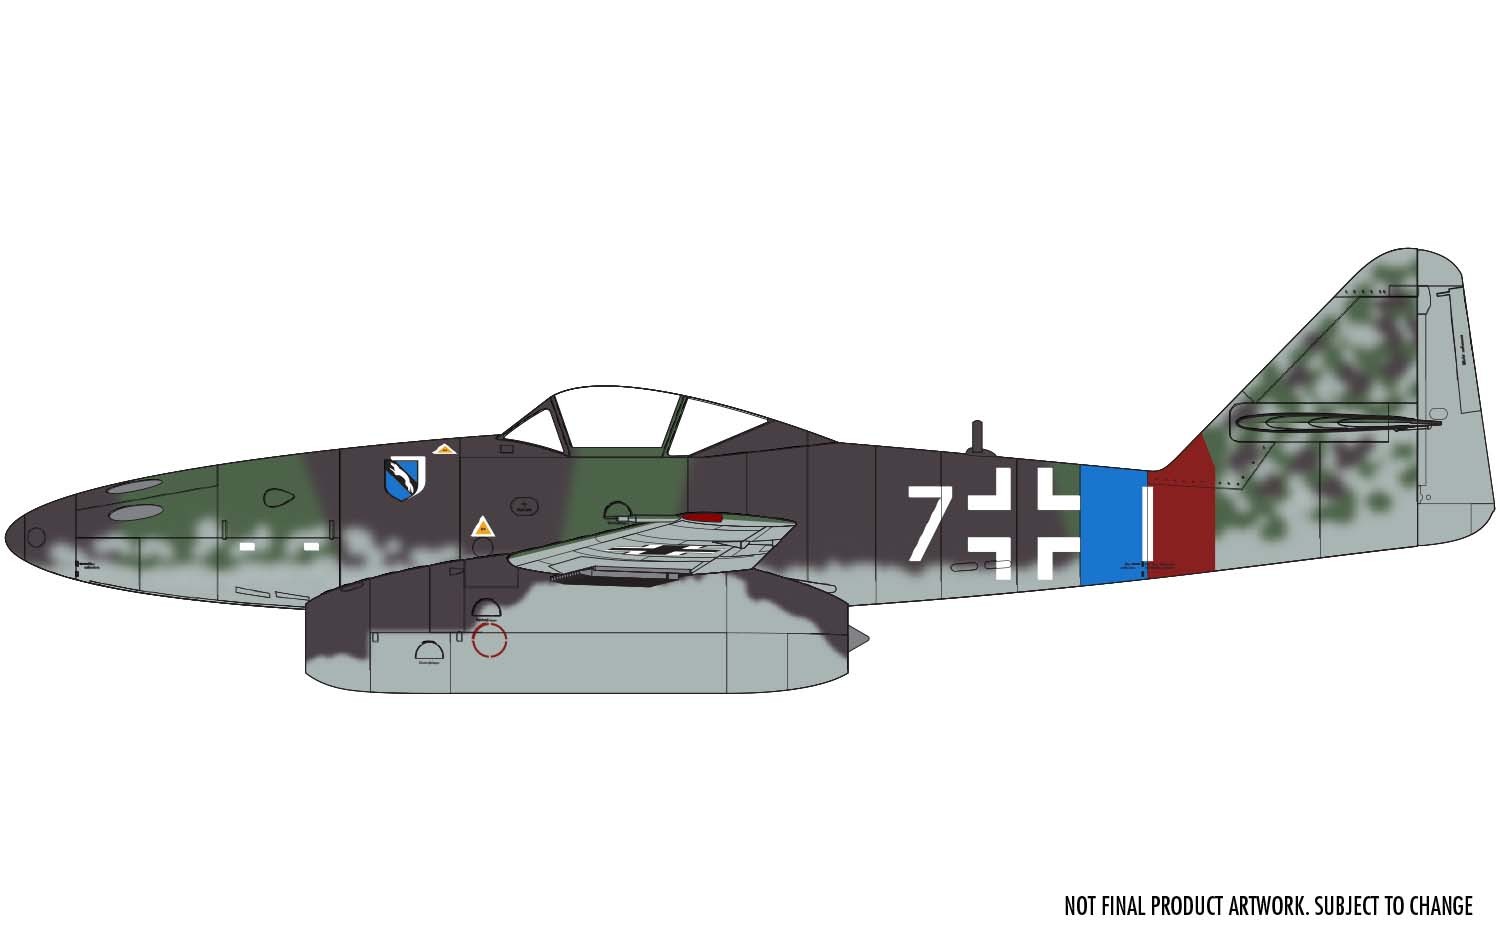 Avión 1/72 -Messerschmitt ME262A-2A- Airfix